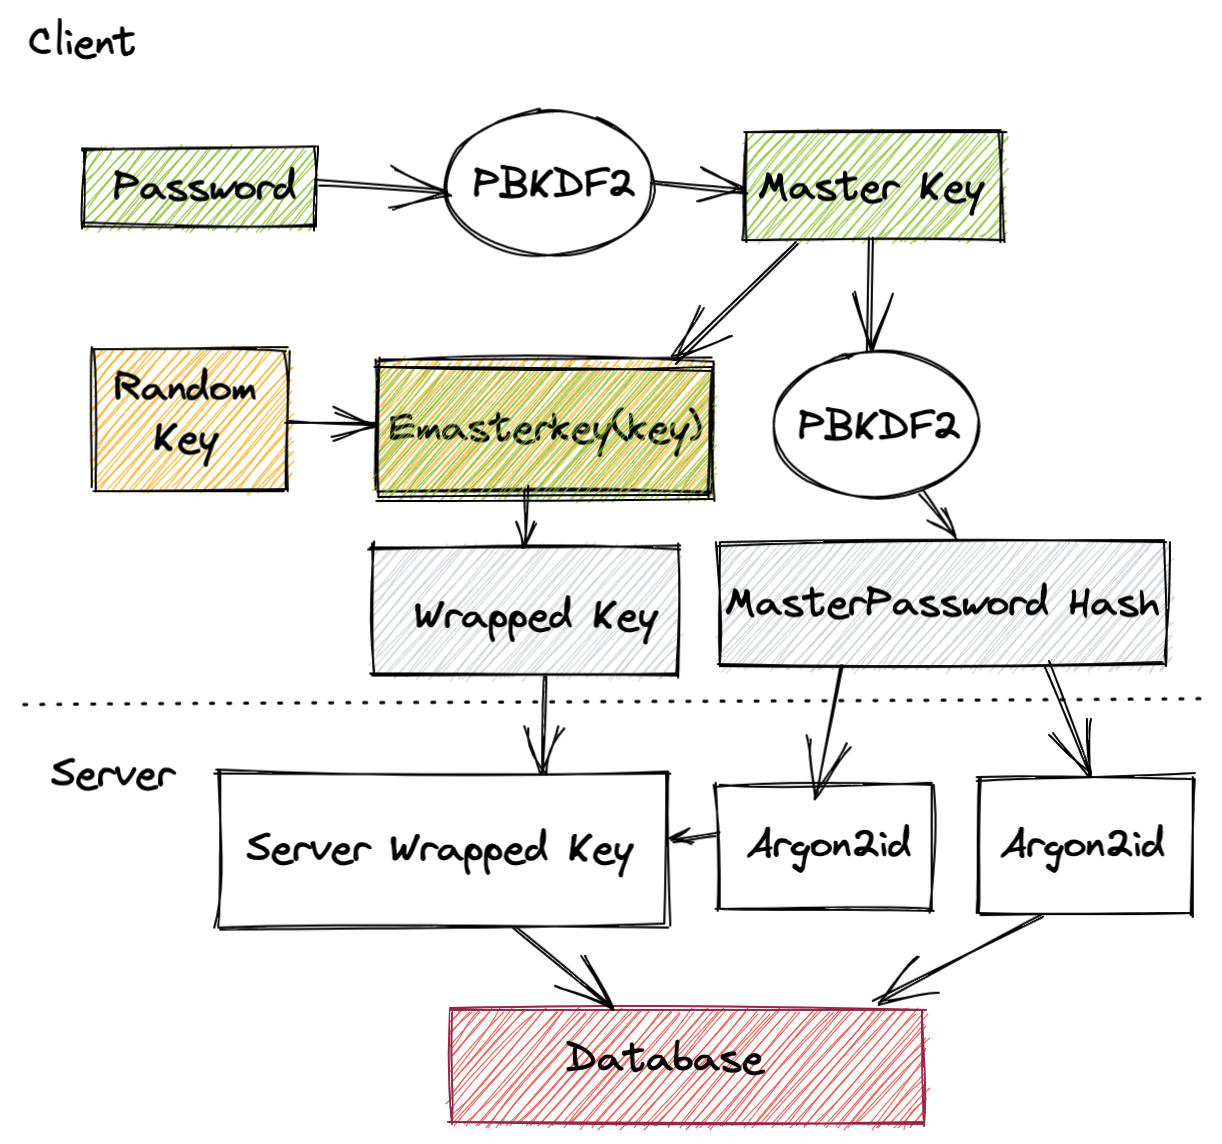 Browser based key management based on passwords